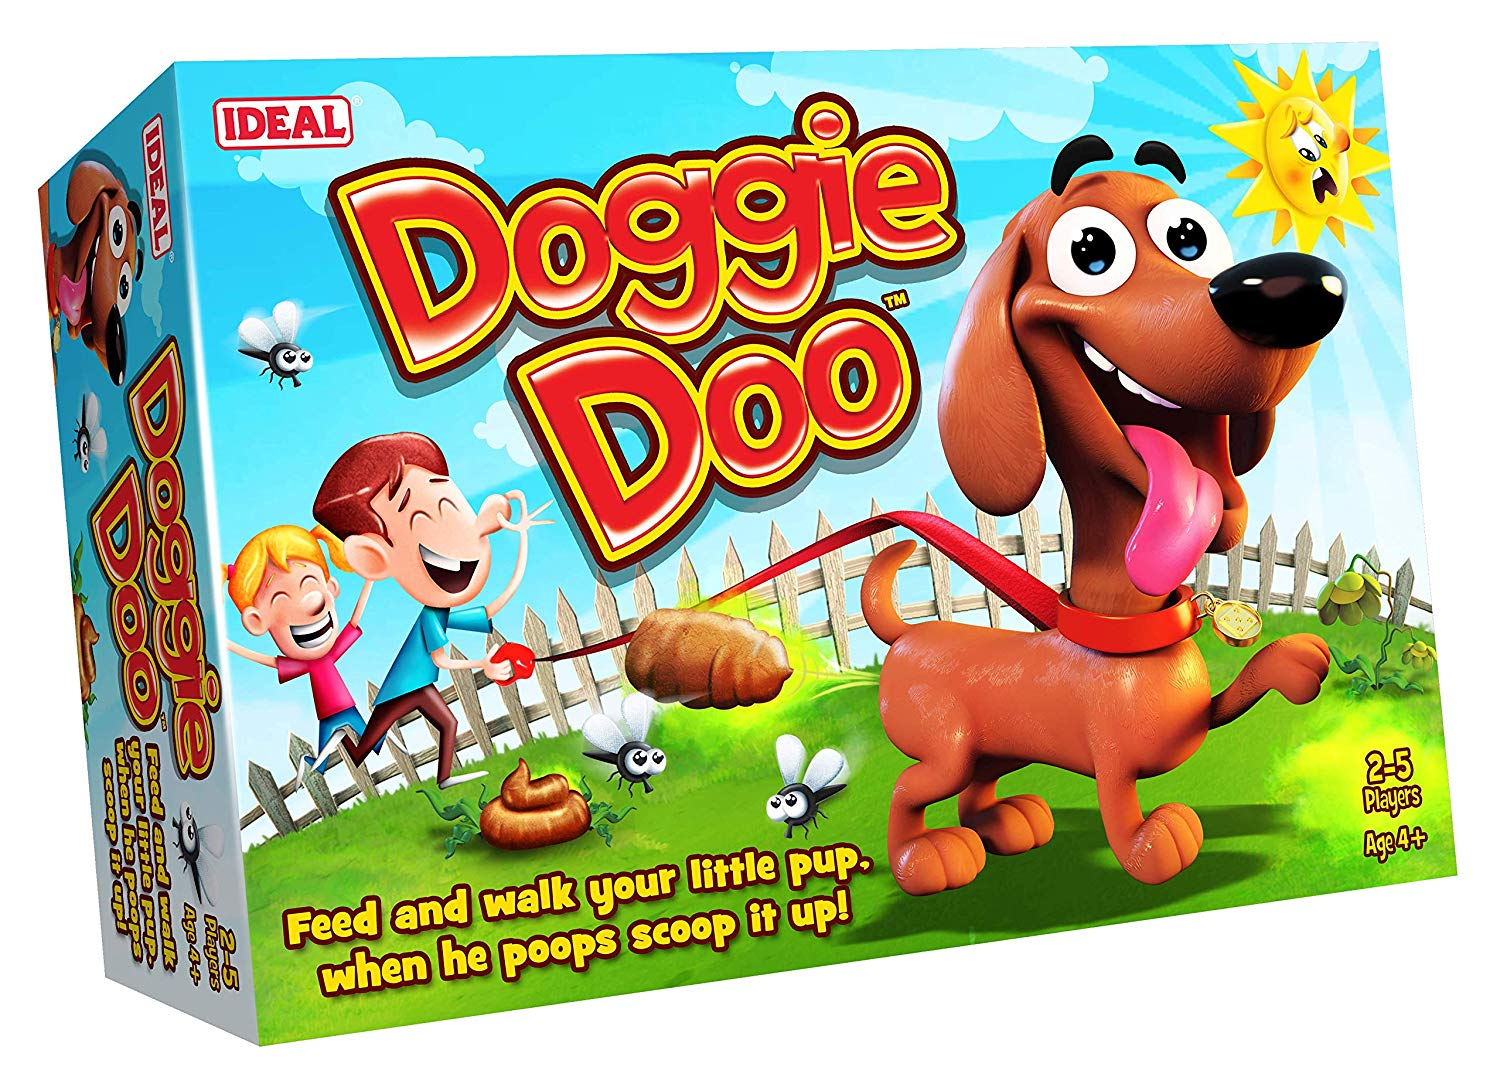 Игра собачка. Doggie Doo игра. Игрушка doggie Doo. Настольная игра собака. Доги дог настольная игра.